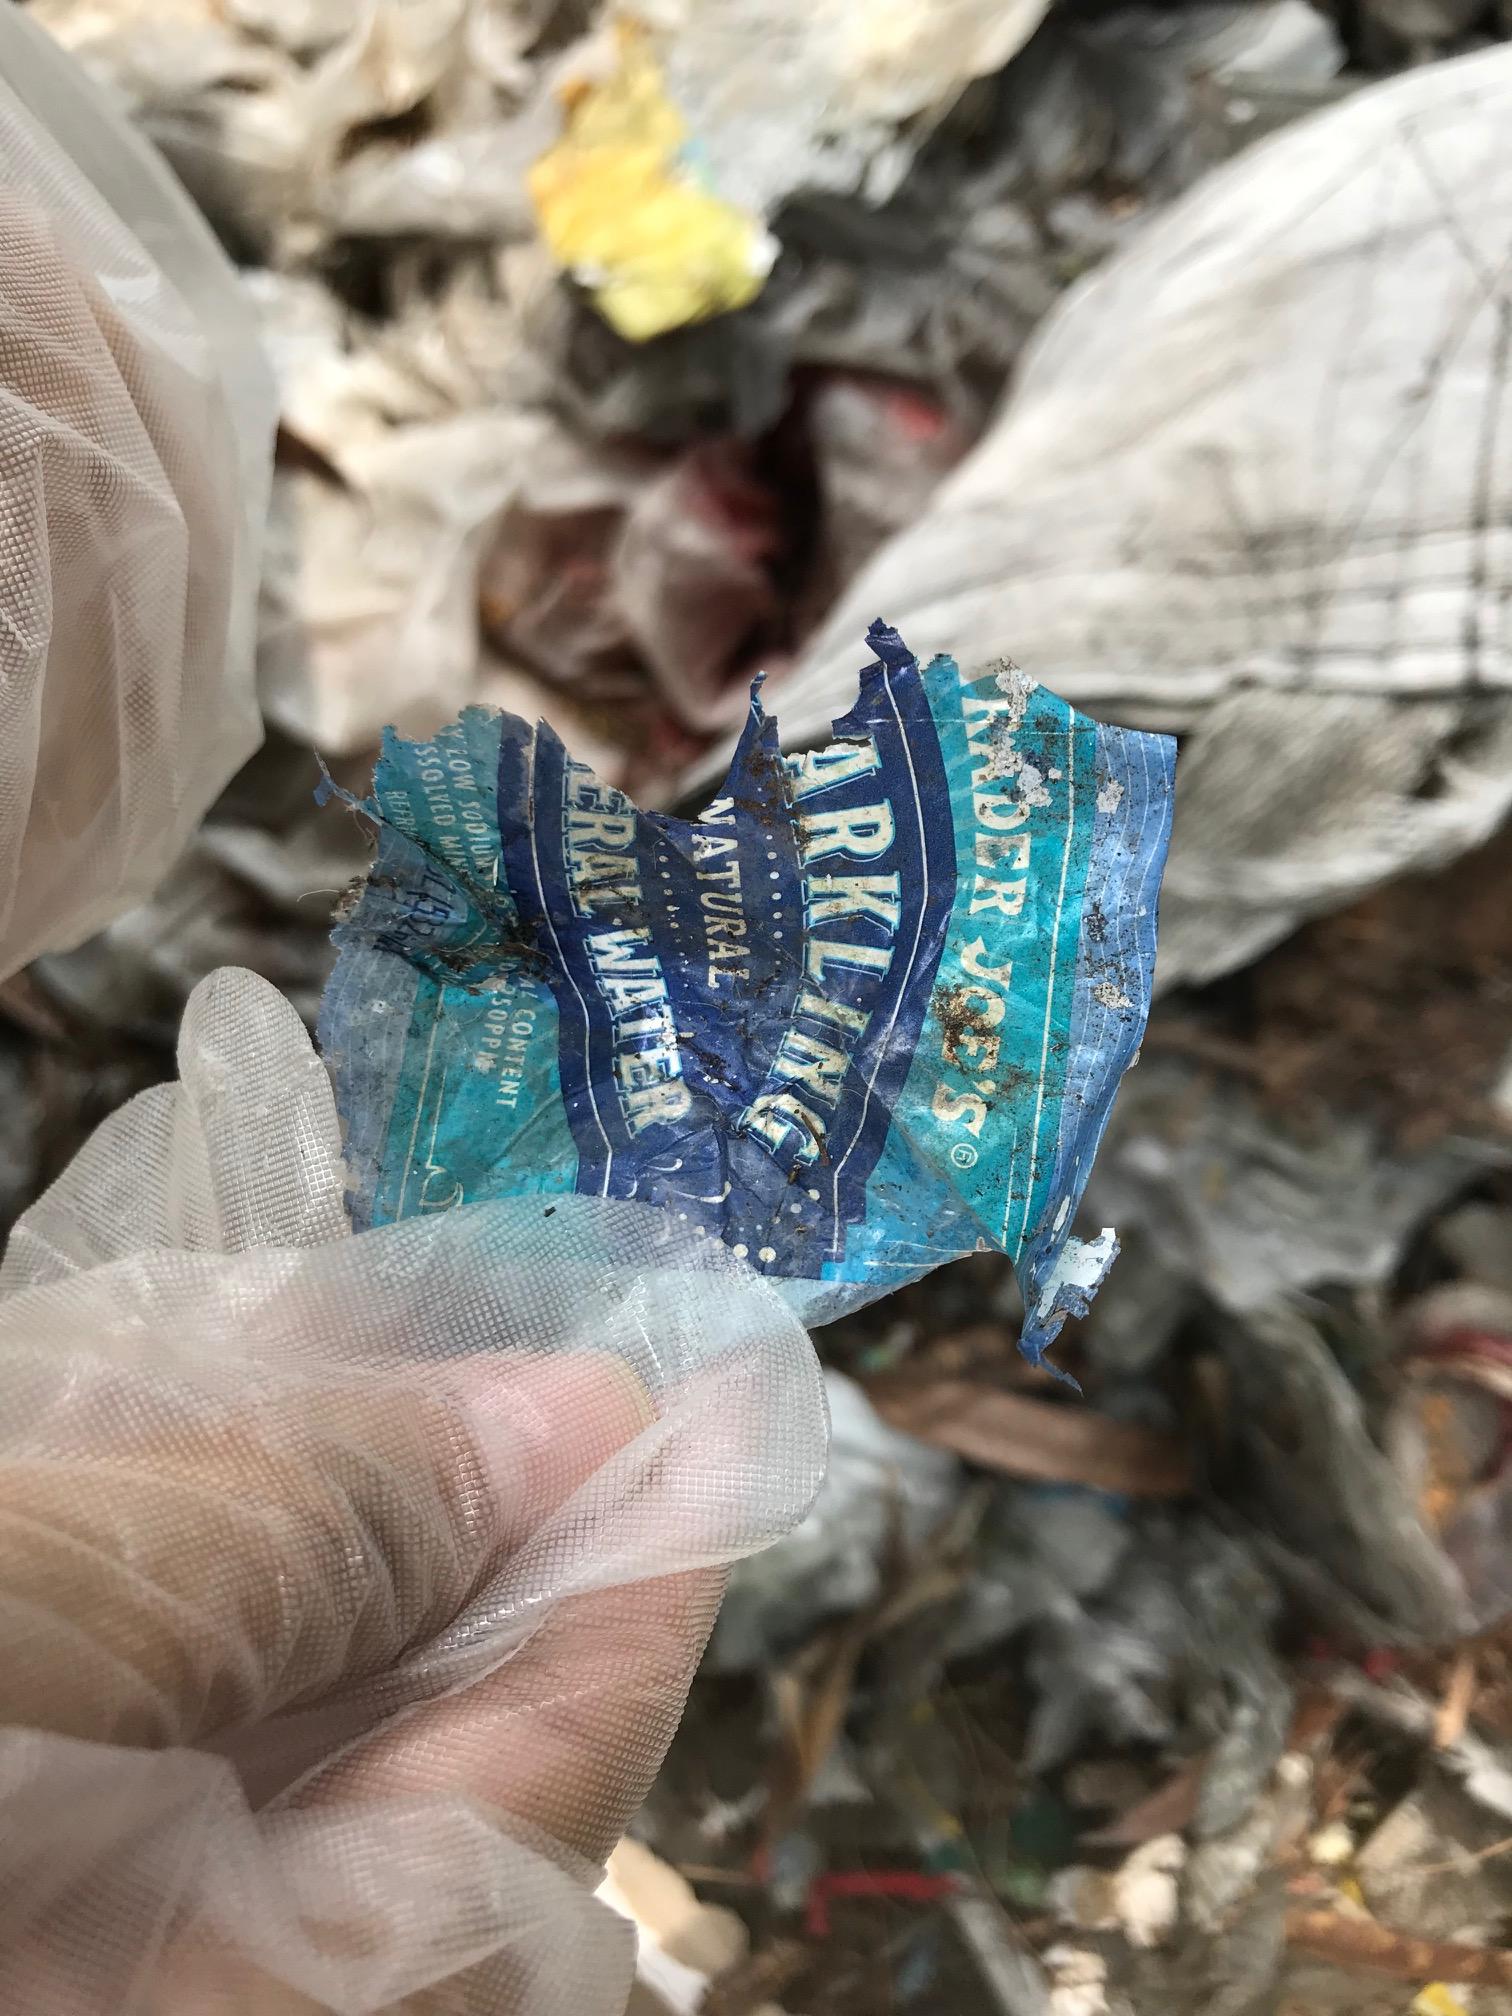 a shredded plastic bottle